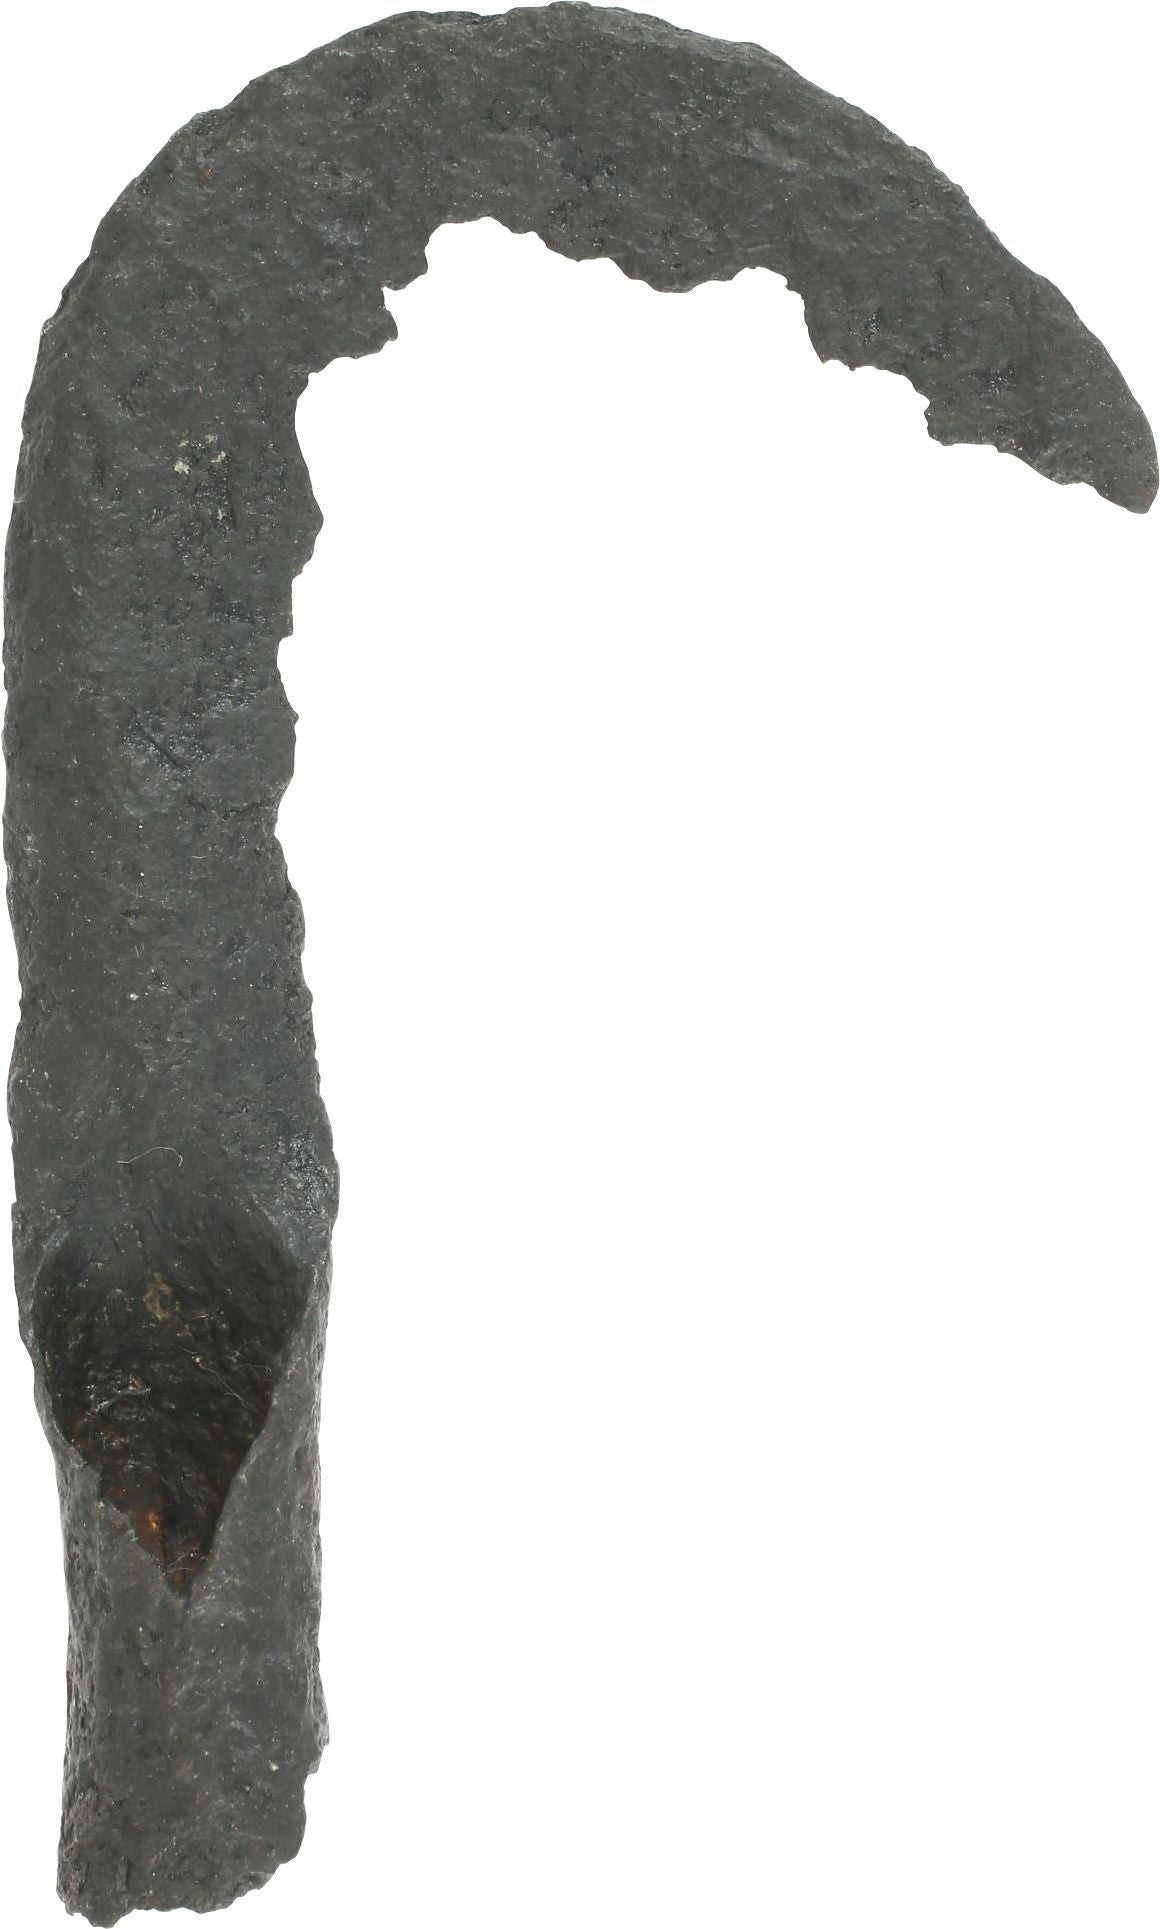 VIKING SOCKETED SICKLE 879-1067 AD - Fagan Arms